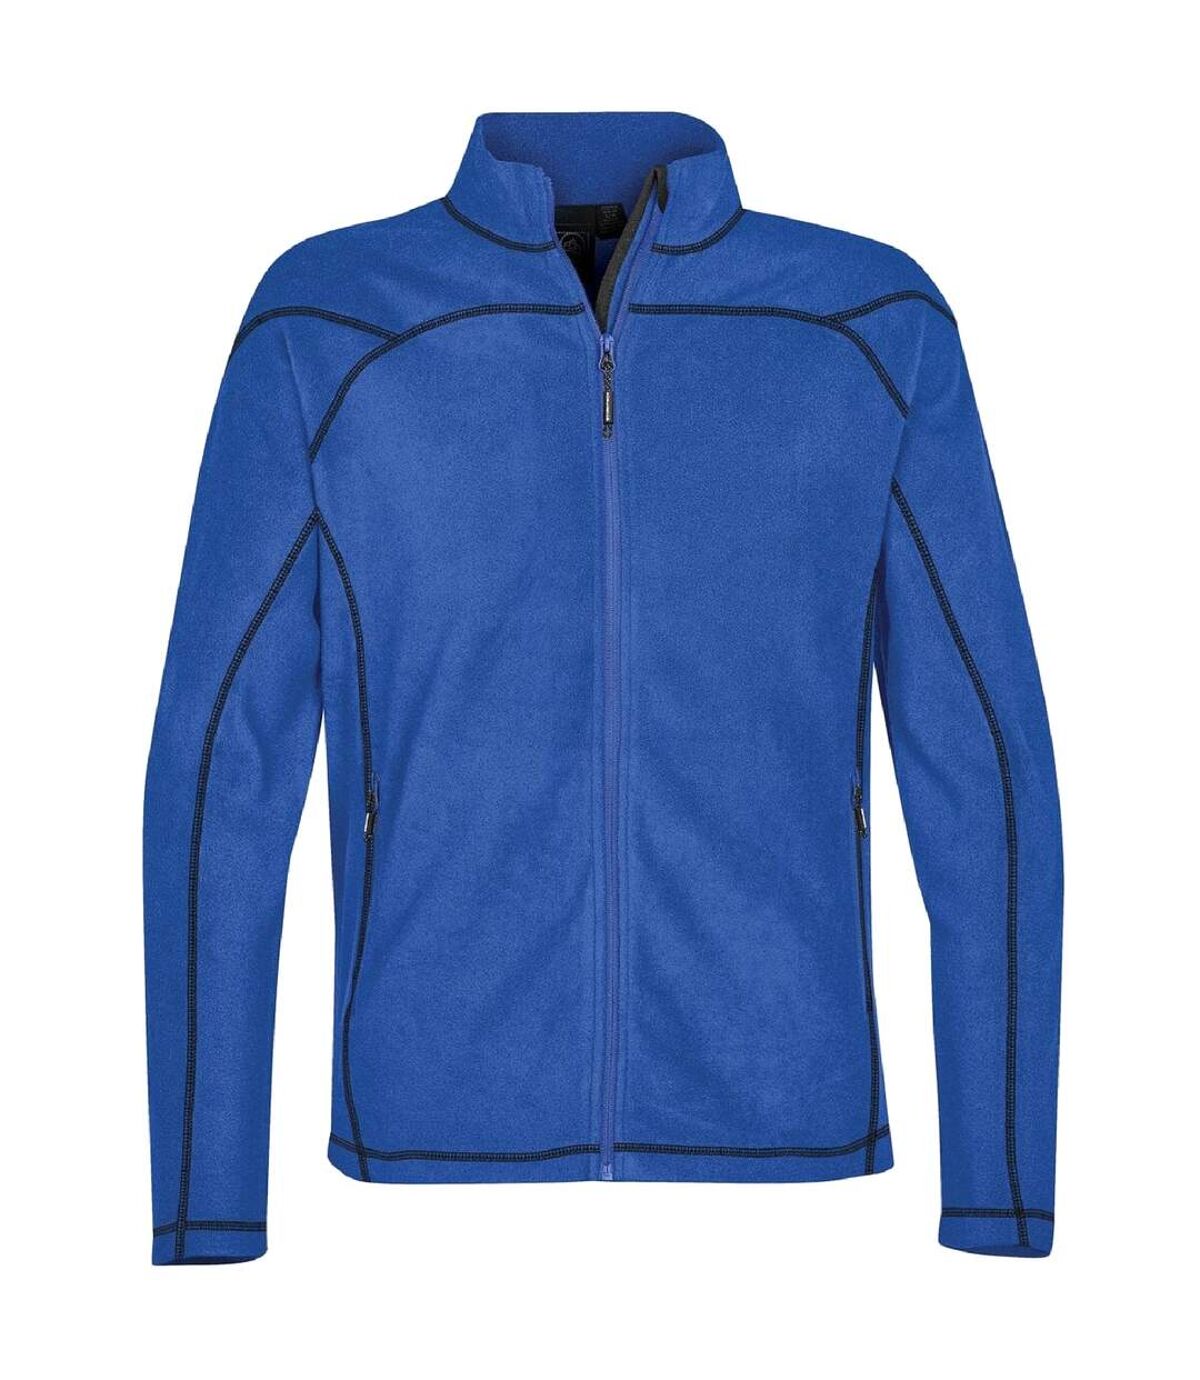 Stormtech Mens Reactor Fleece Shell Jacket (Azure Blue) - UTBC3889